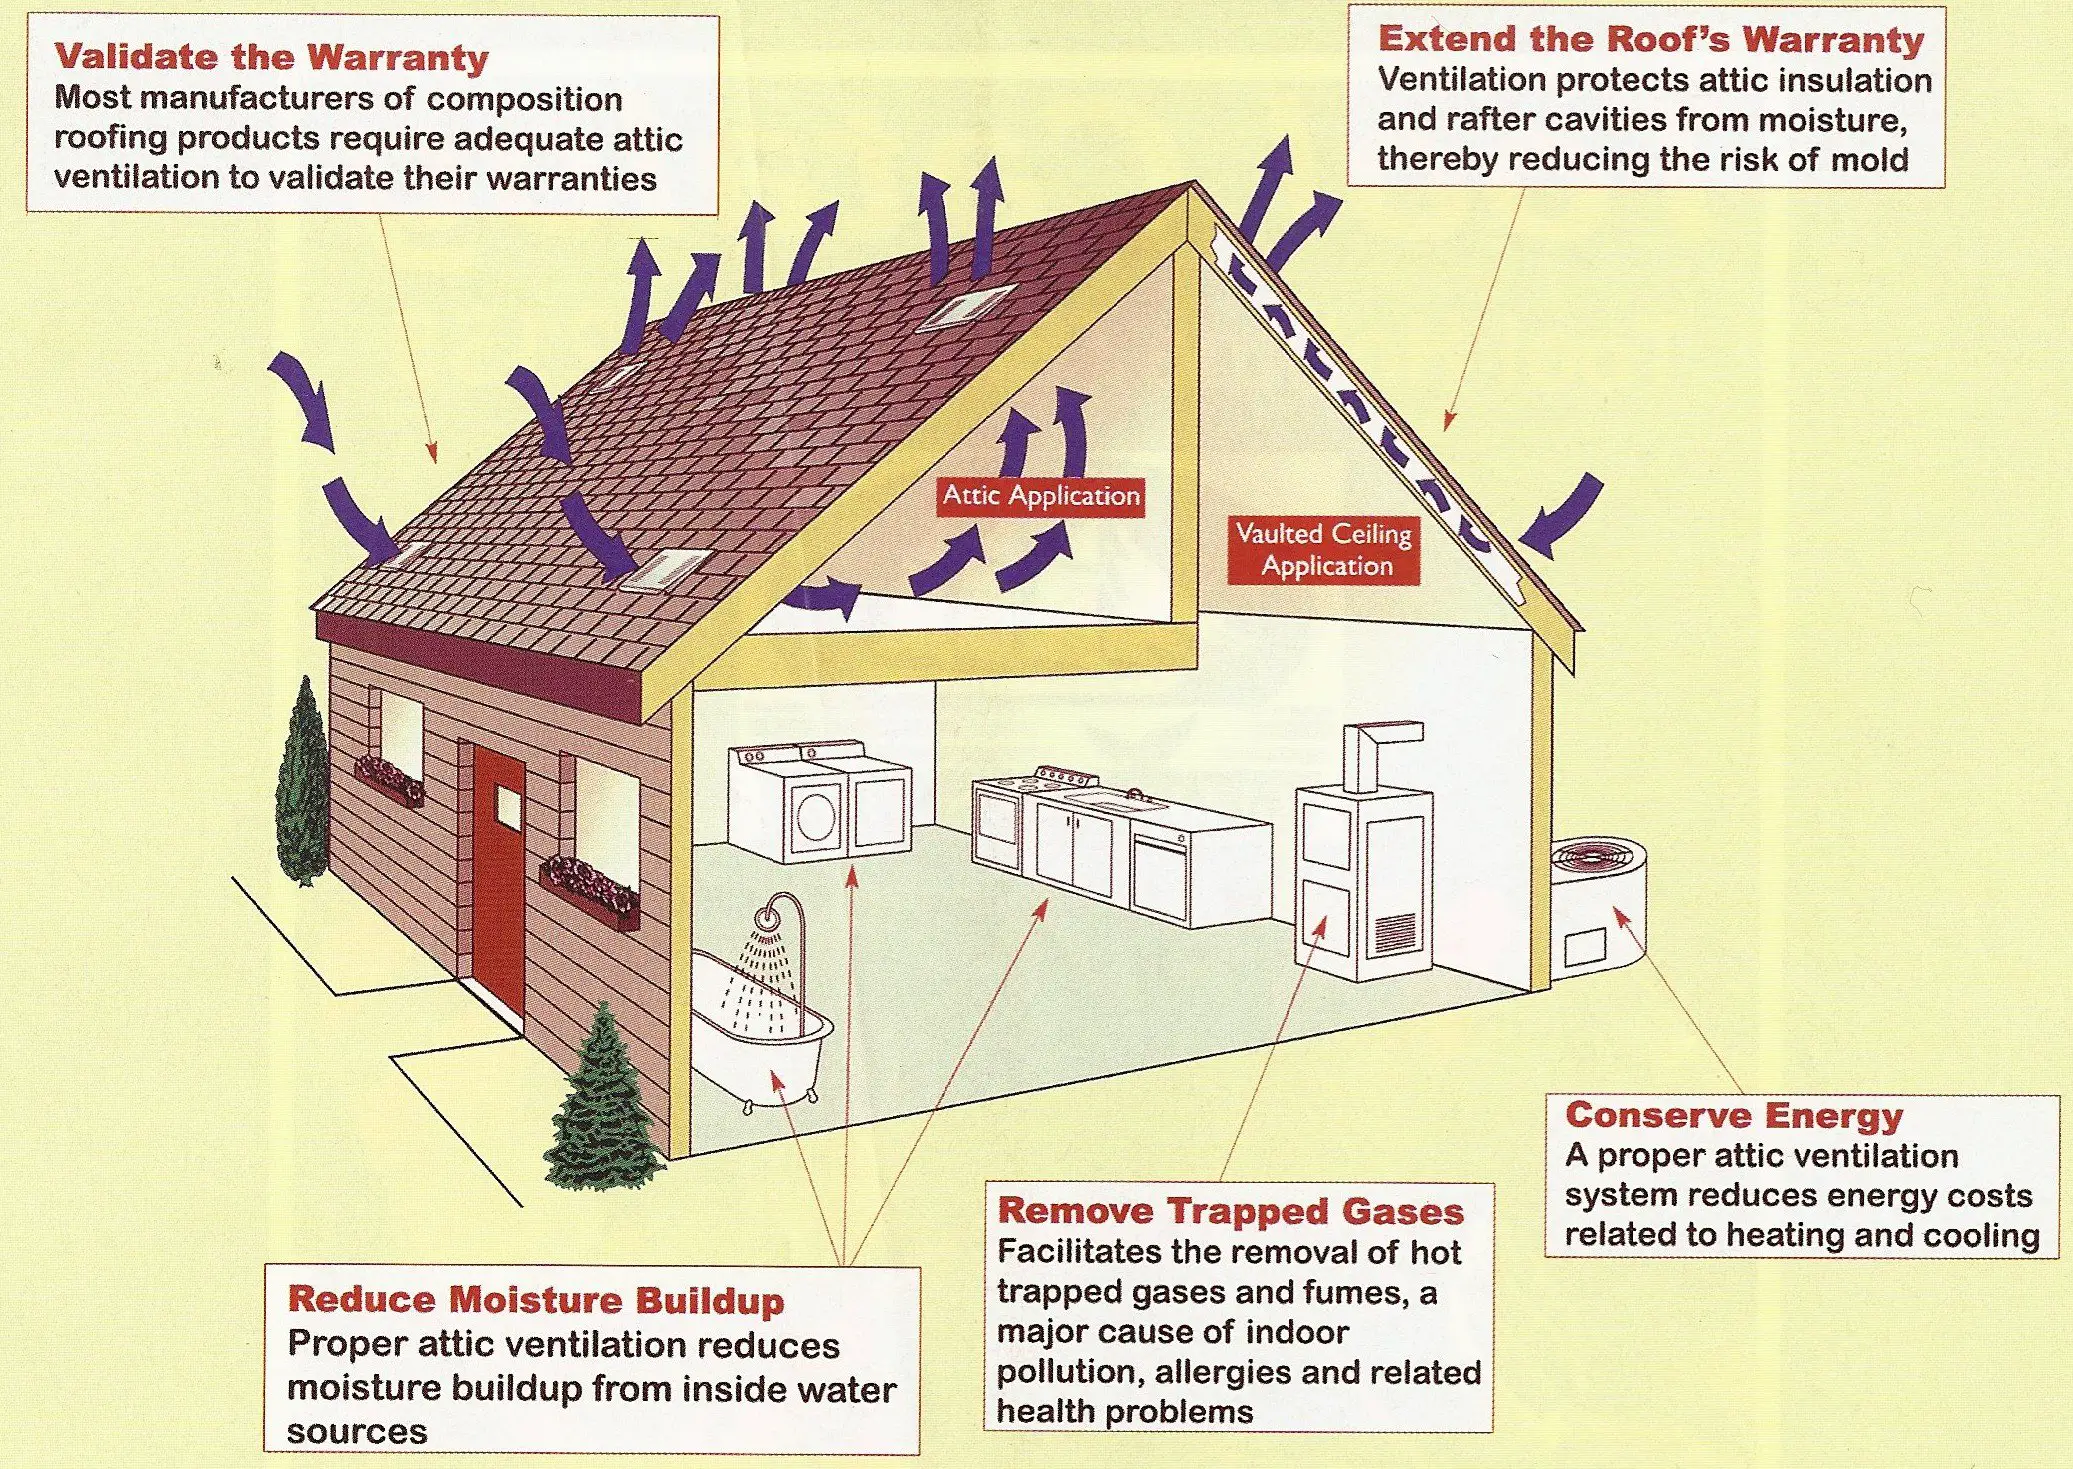 How to improve attic ventilation